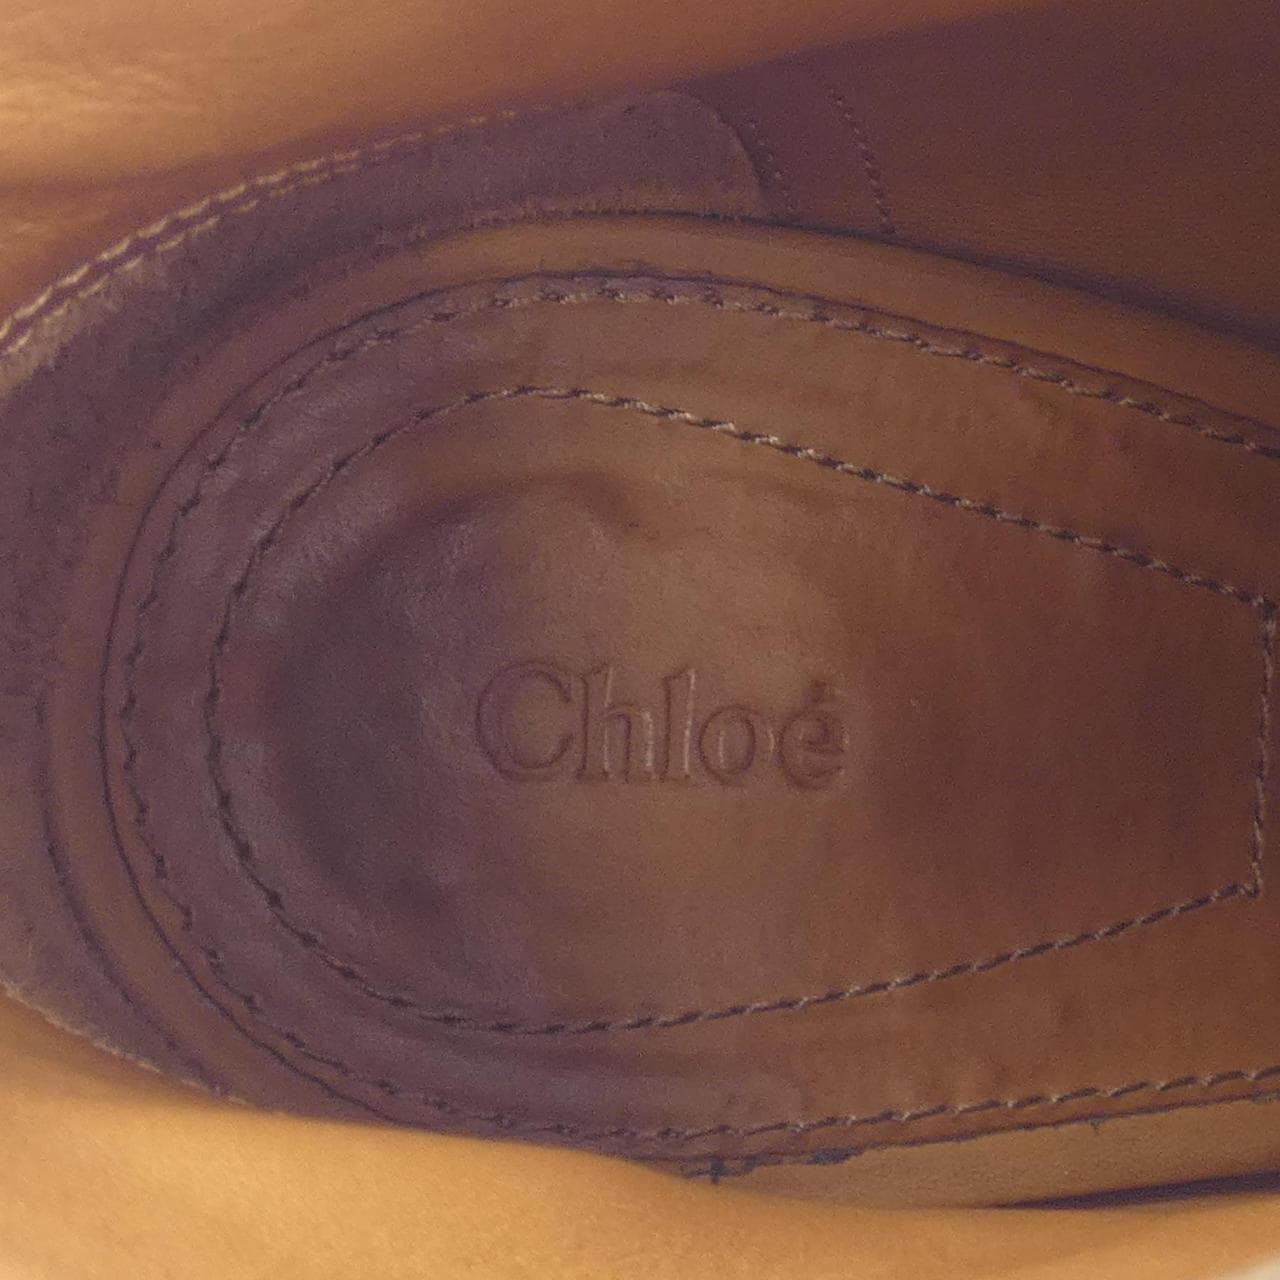 Chloe Chloe鞋